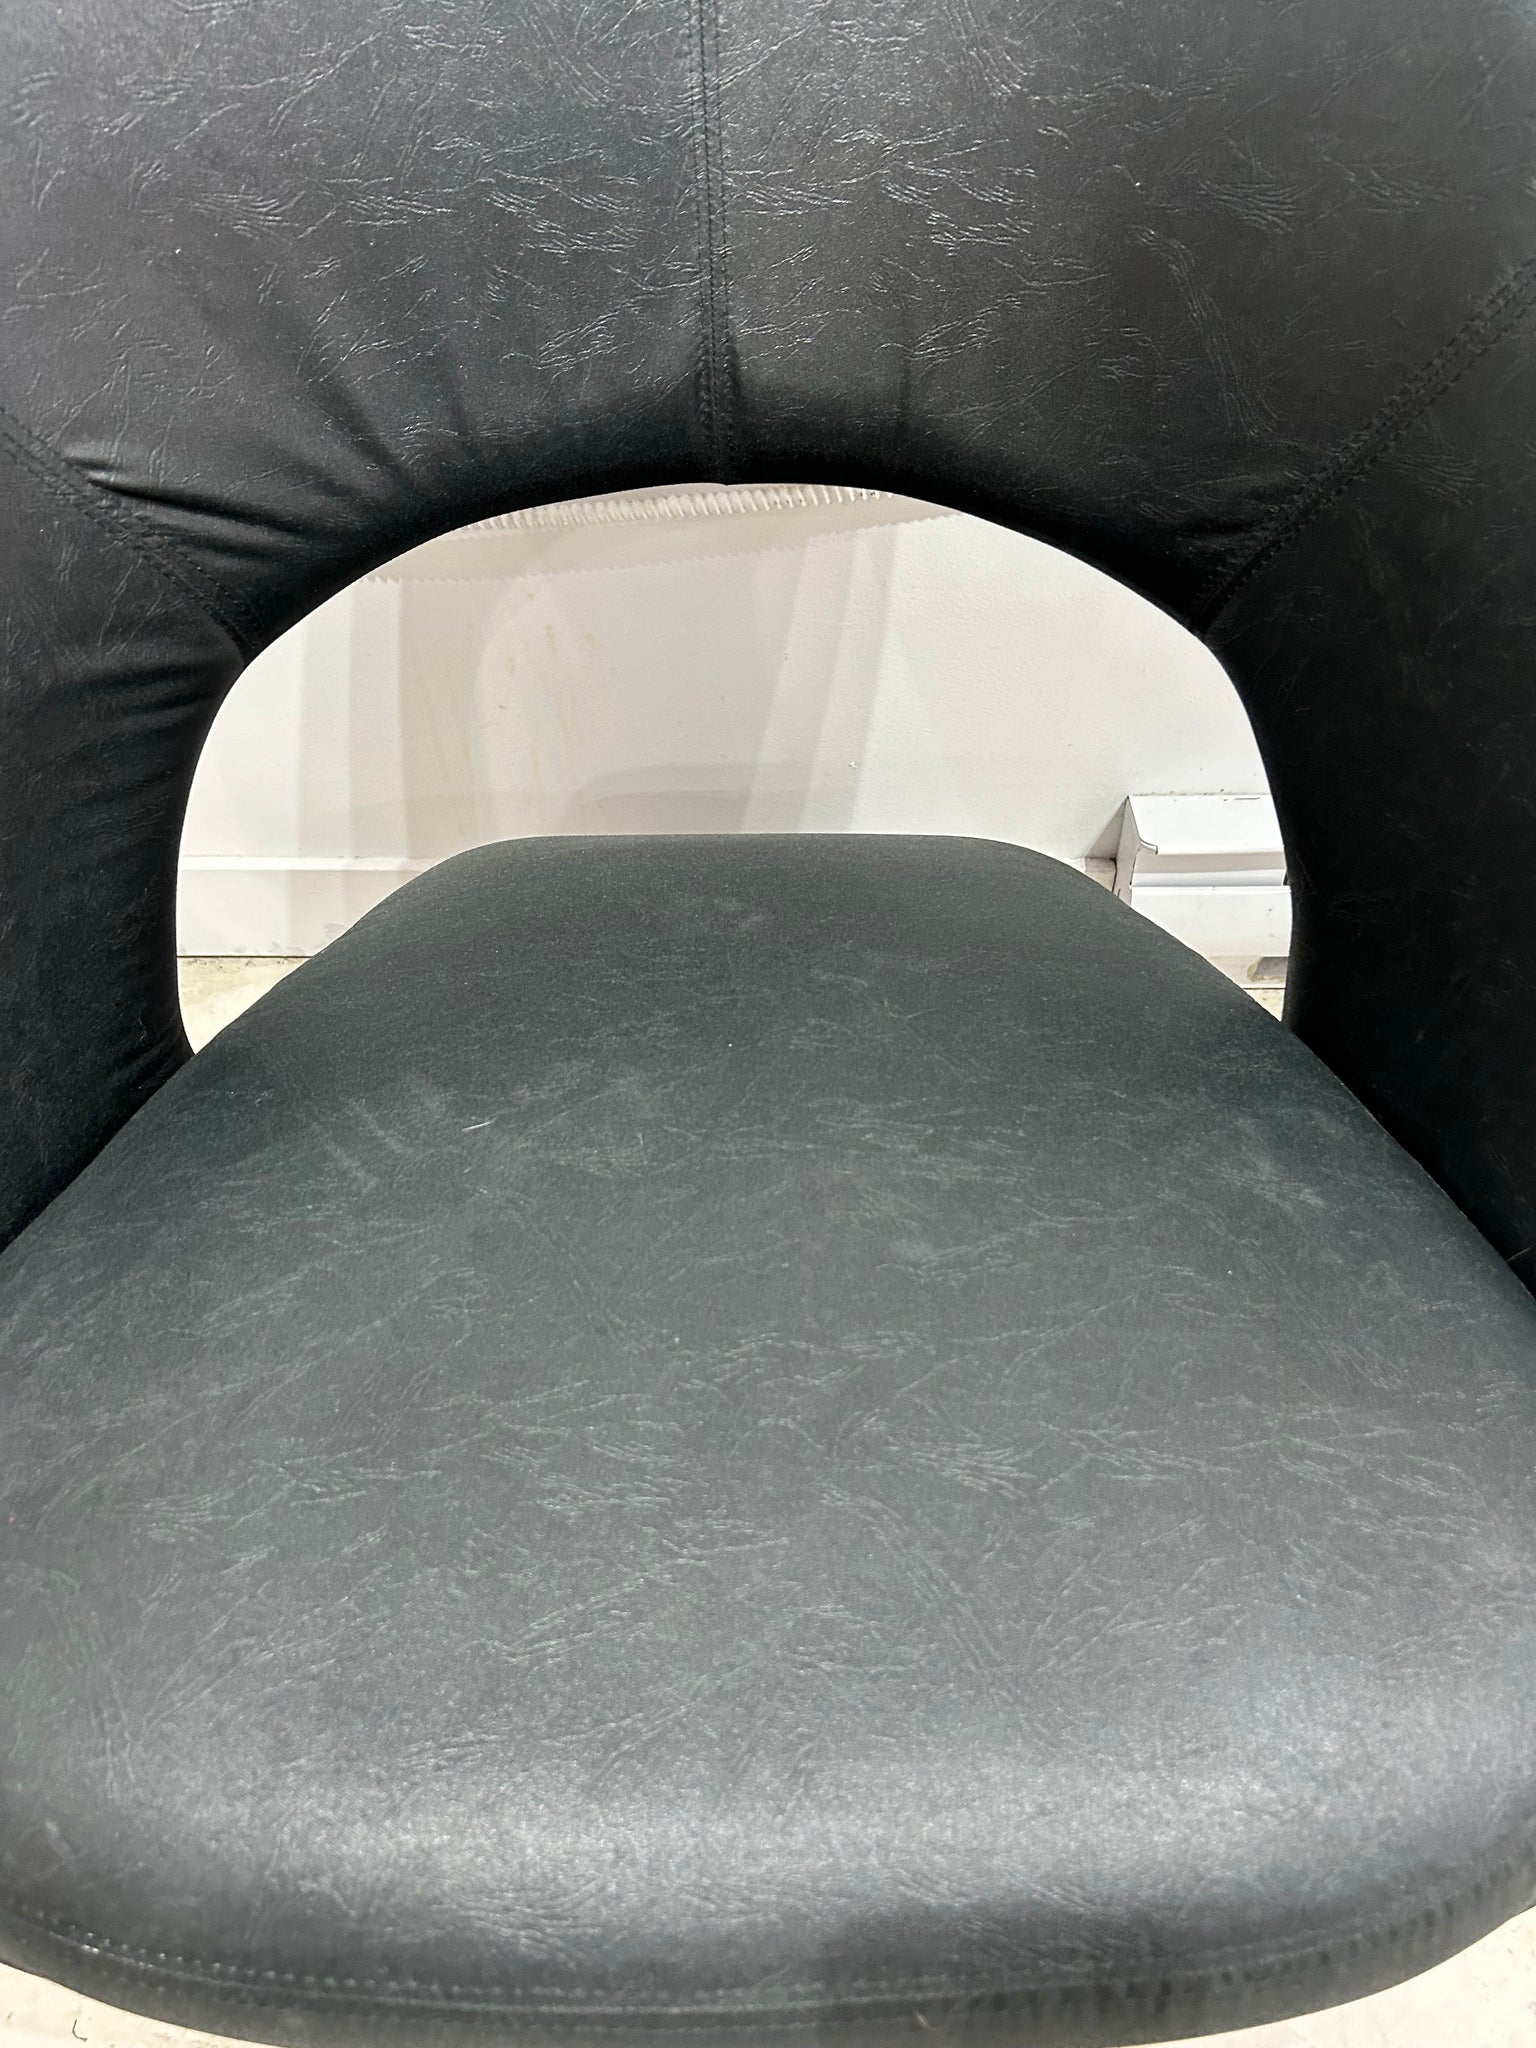 Fauteuil chaise noir de style Jaymar tongue